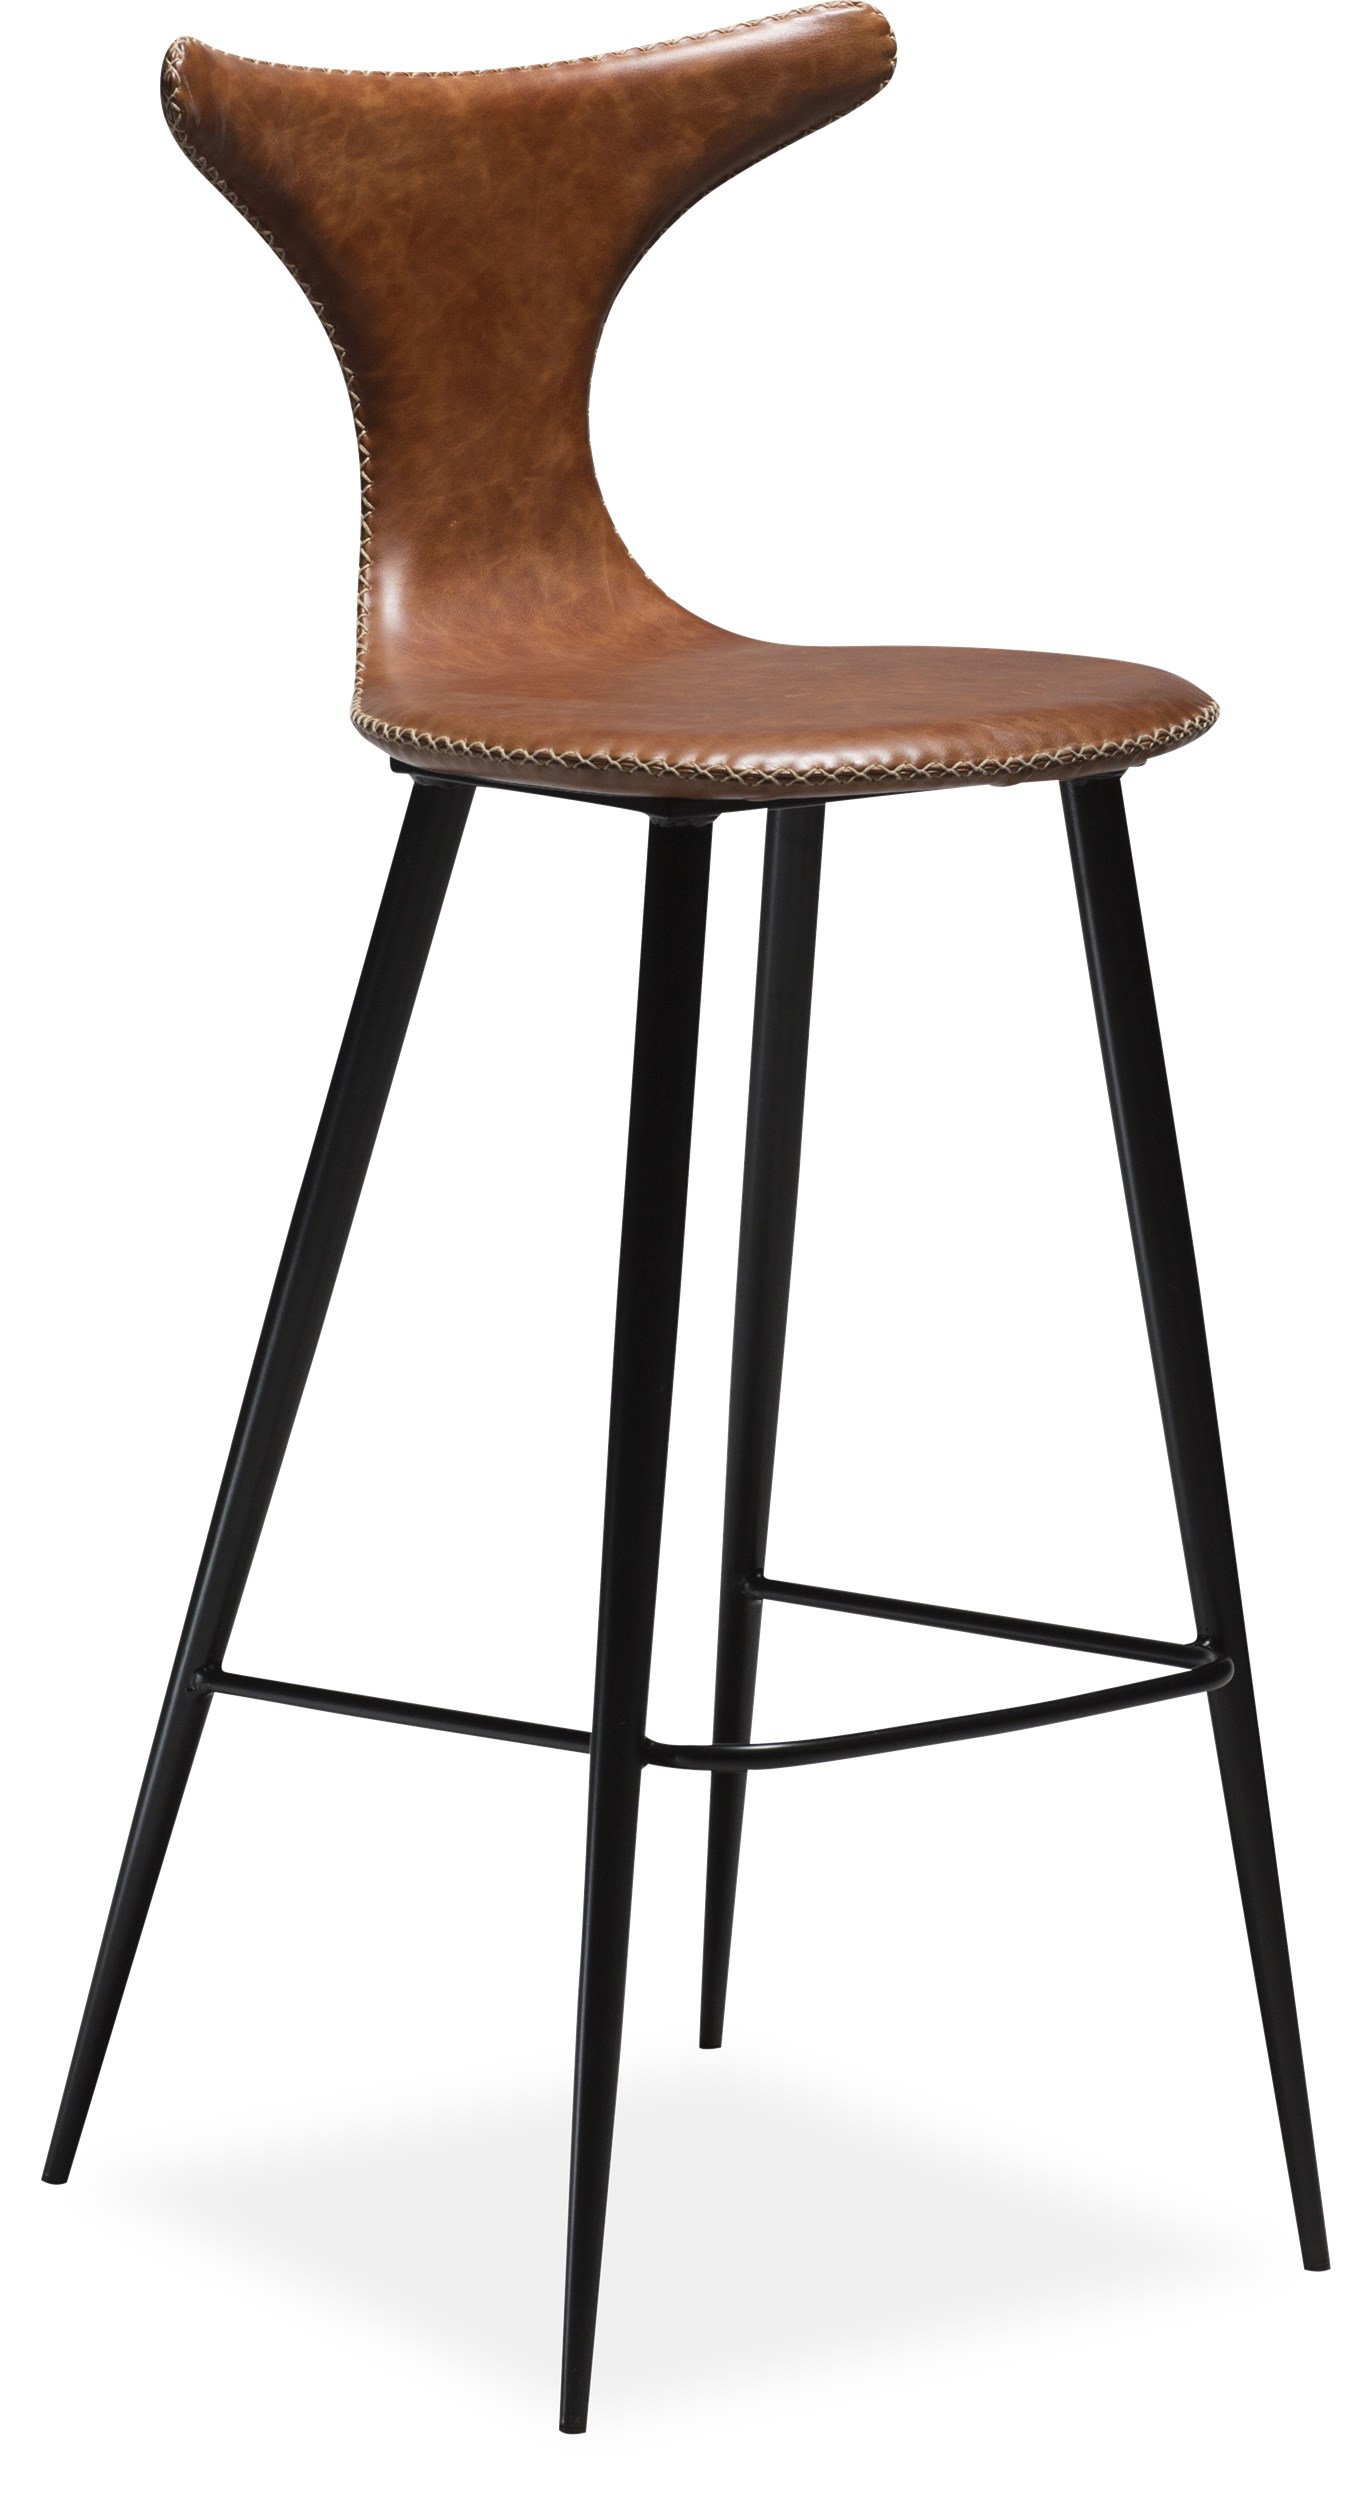 Dolphin Barstol - Sits i vintage ljusbrunt konstläder, med kontrastfärgade sömmar och runda ben i svartlackerad metall